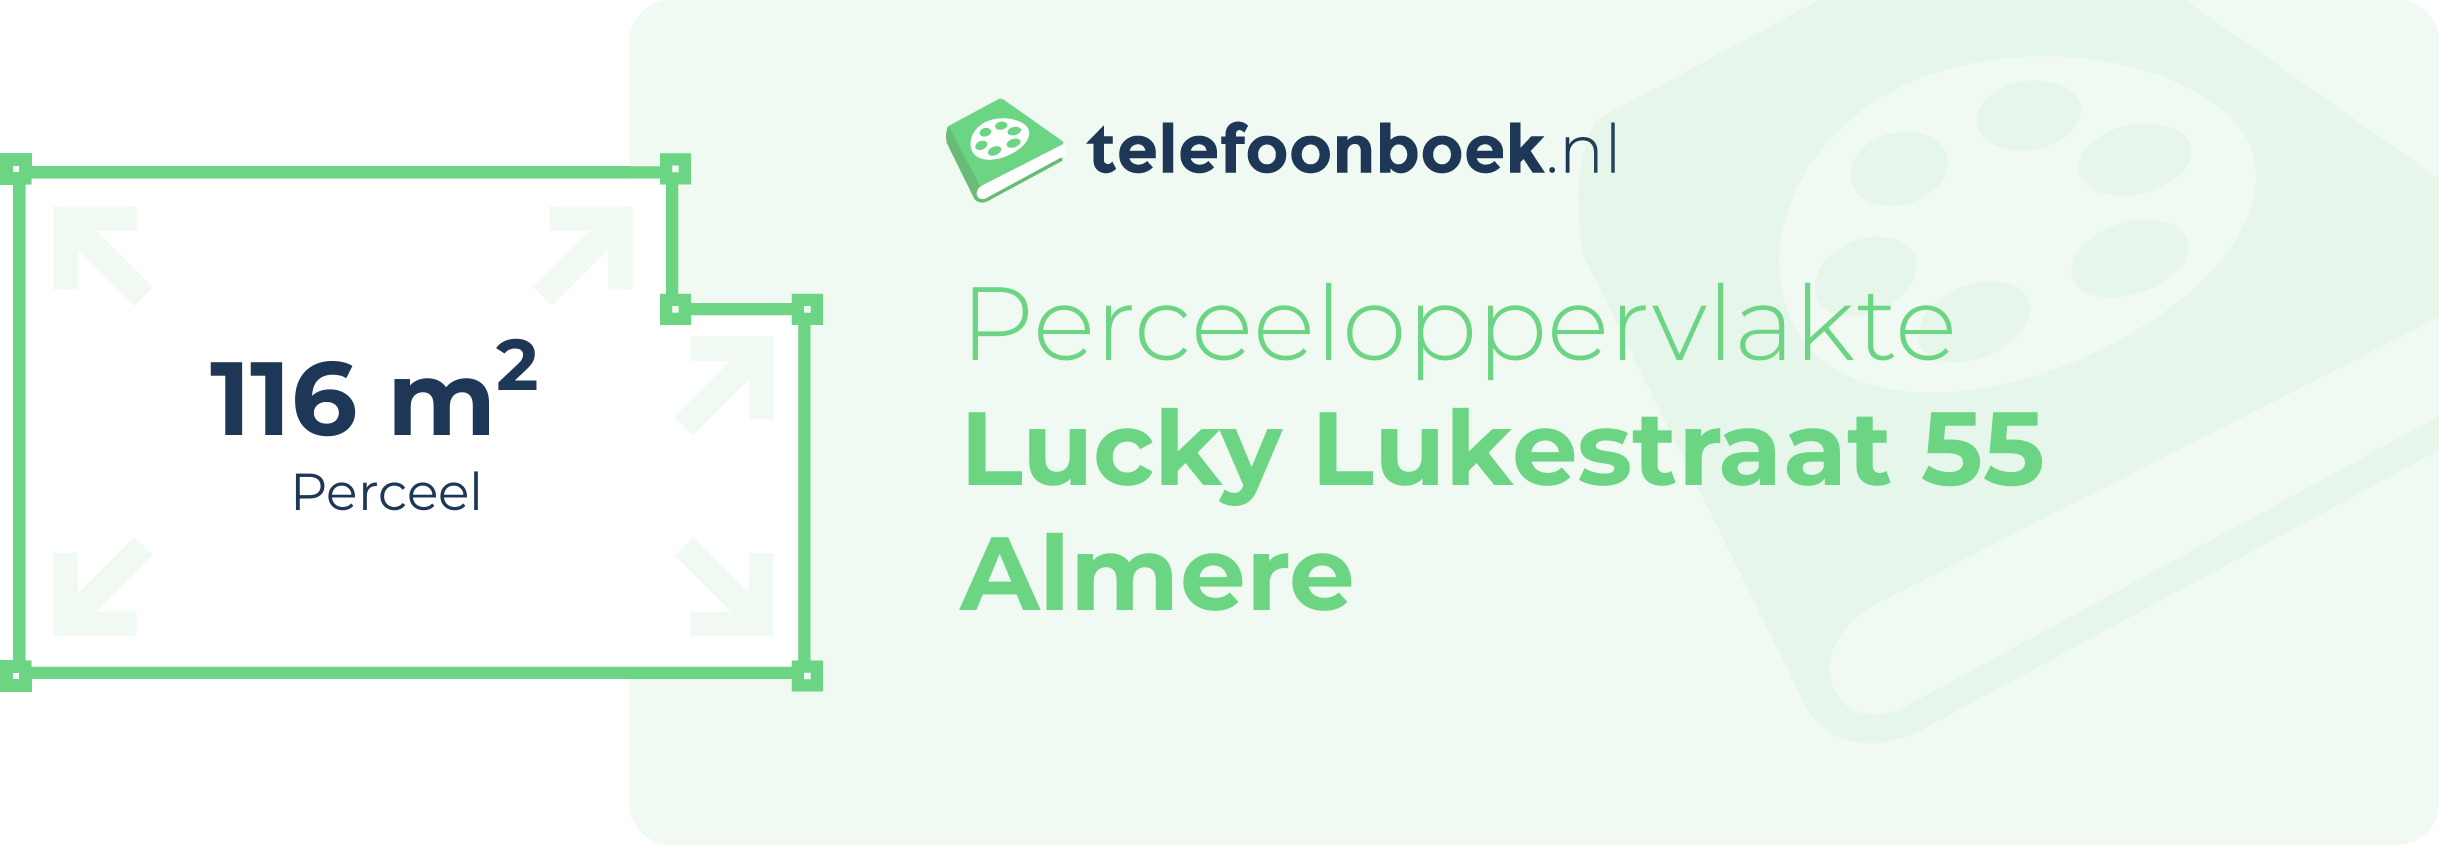 Perceeloppervlakte Lucky Lukestraat 55 Almere